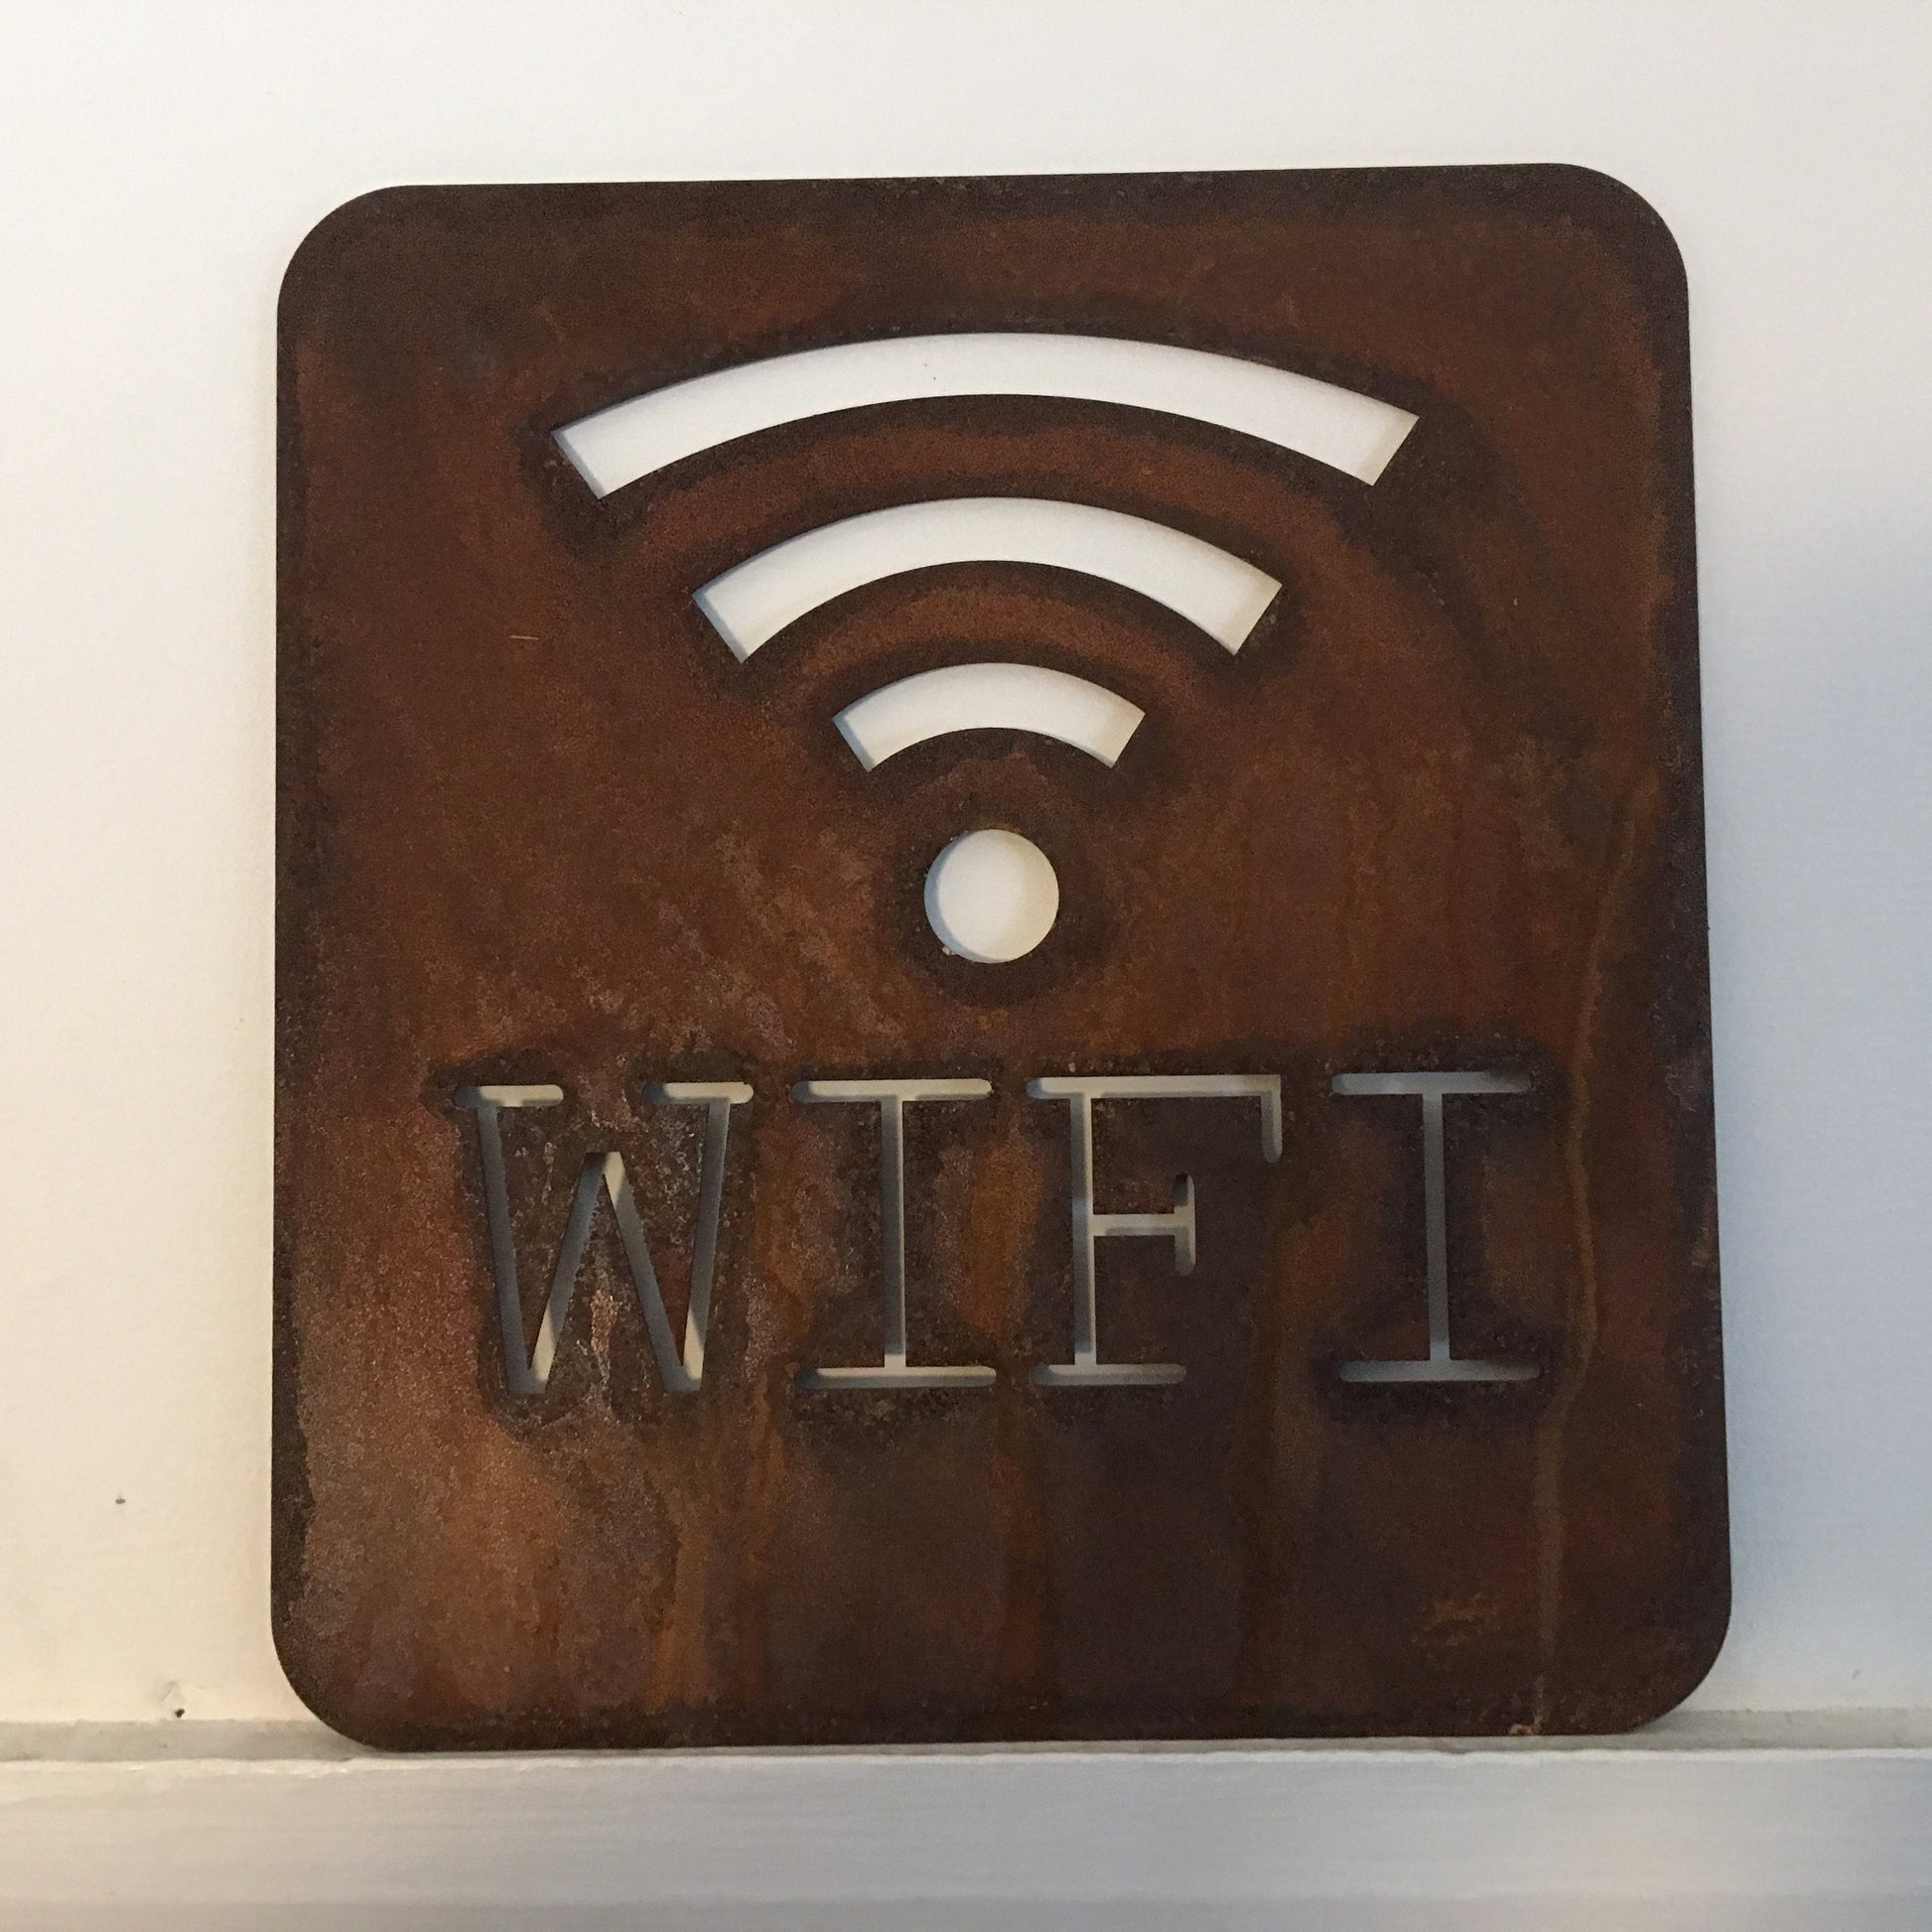 Rusty metal wifi sign